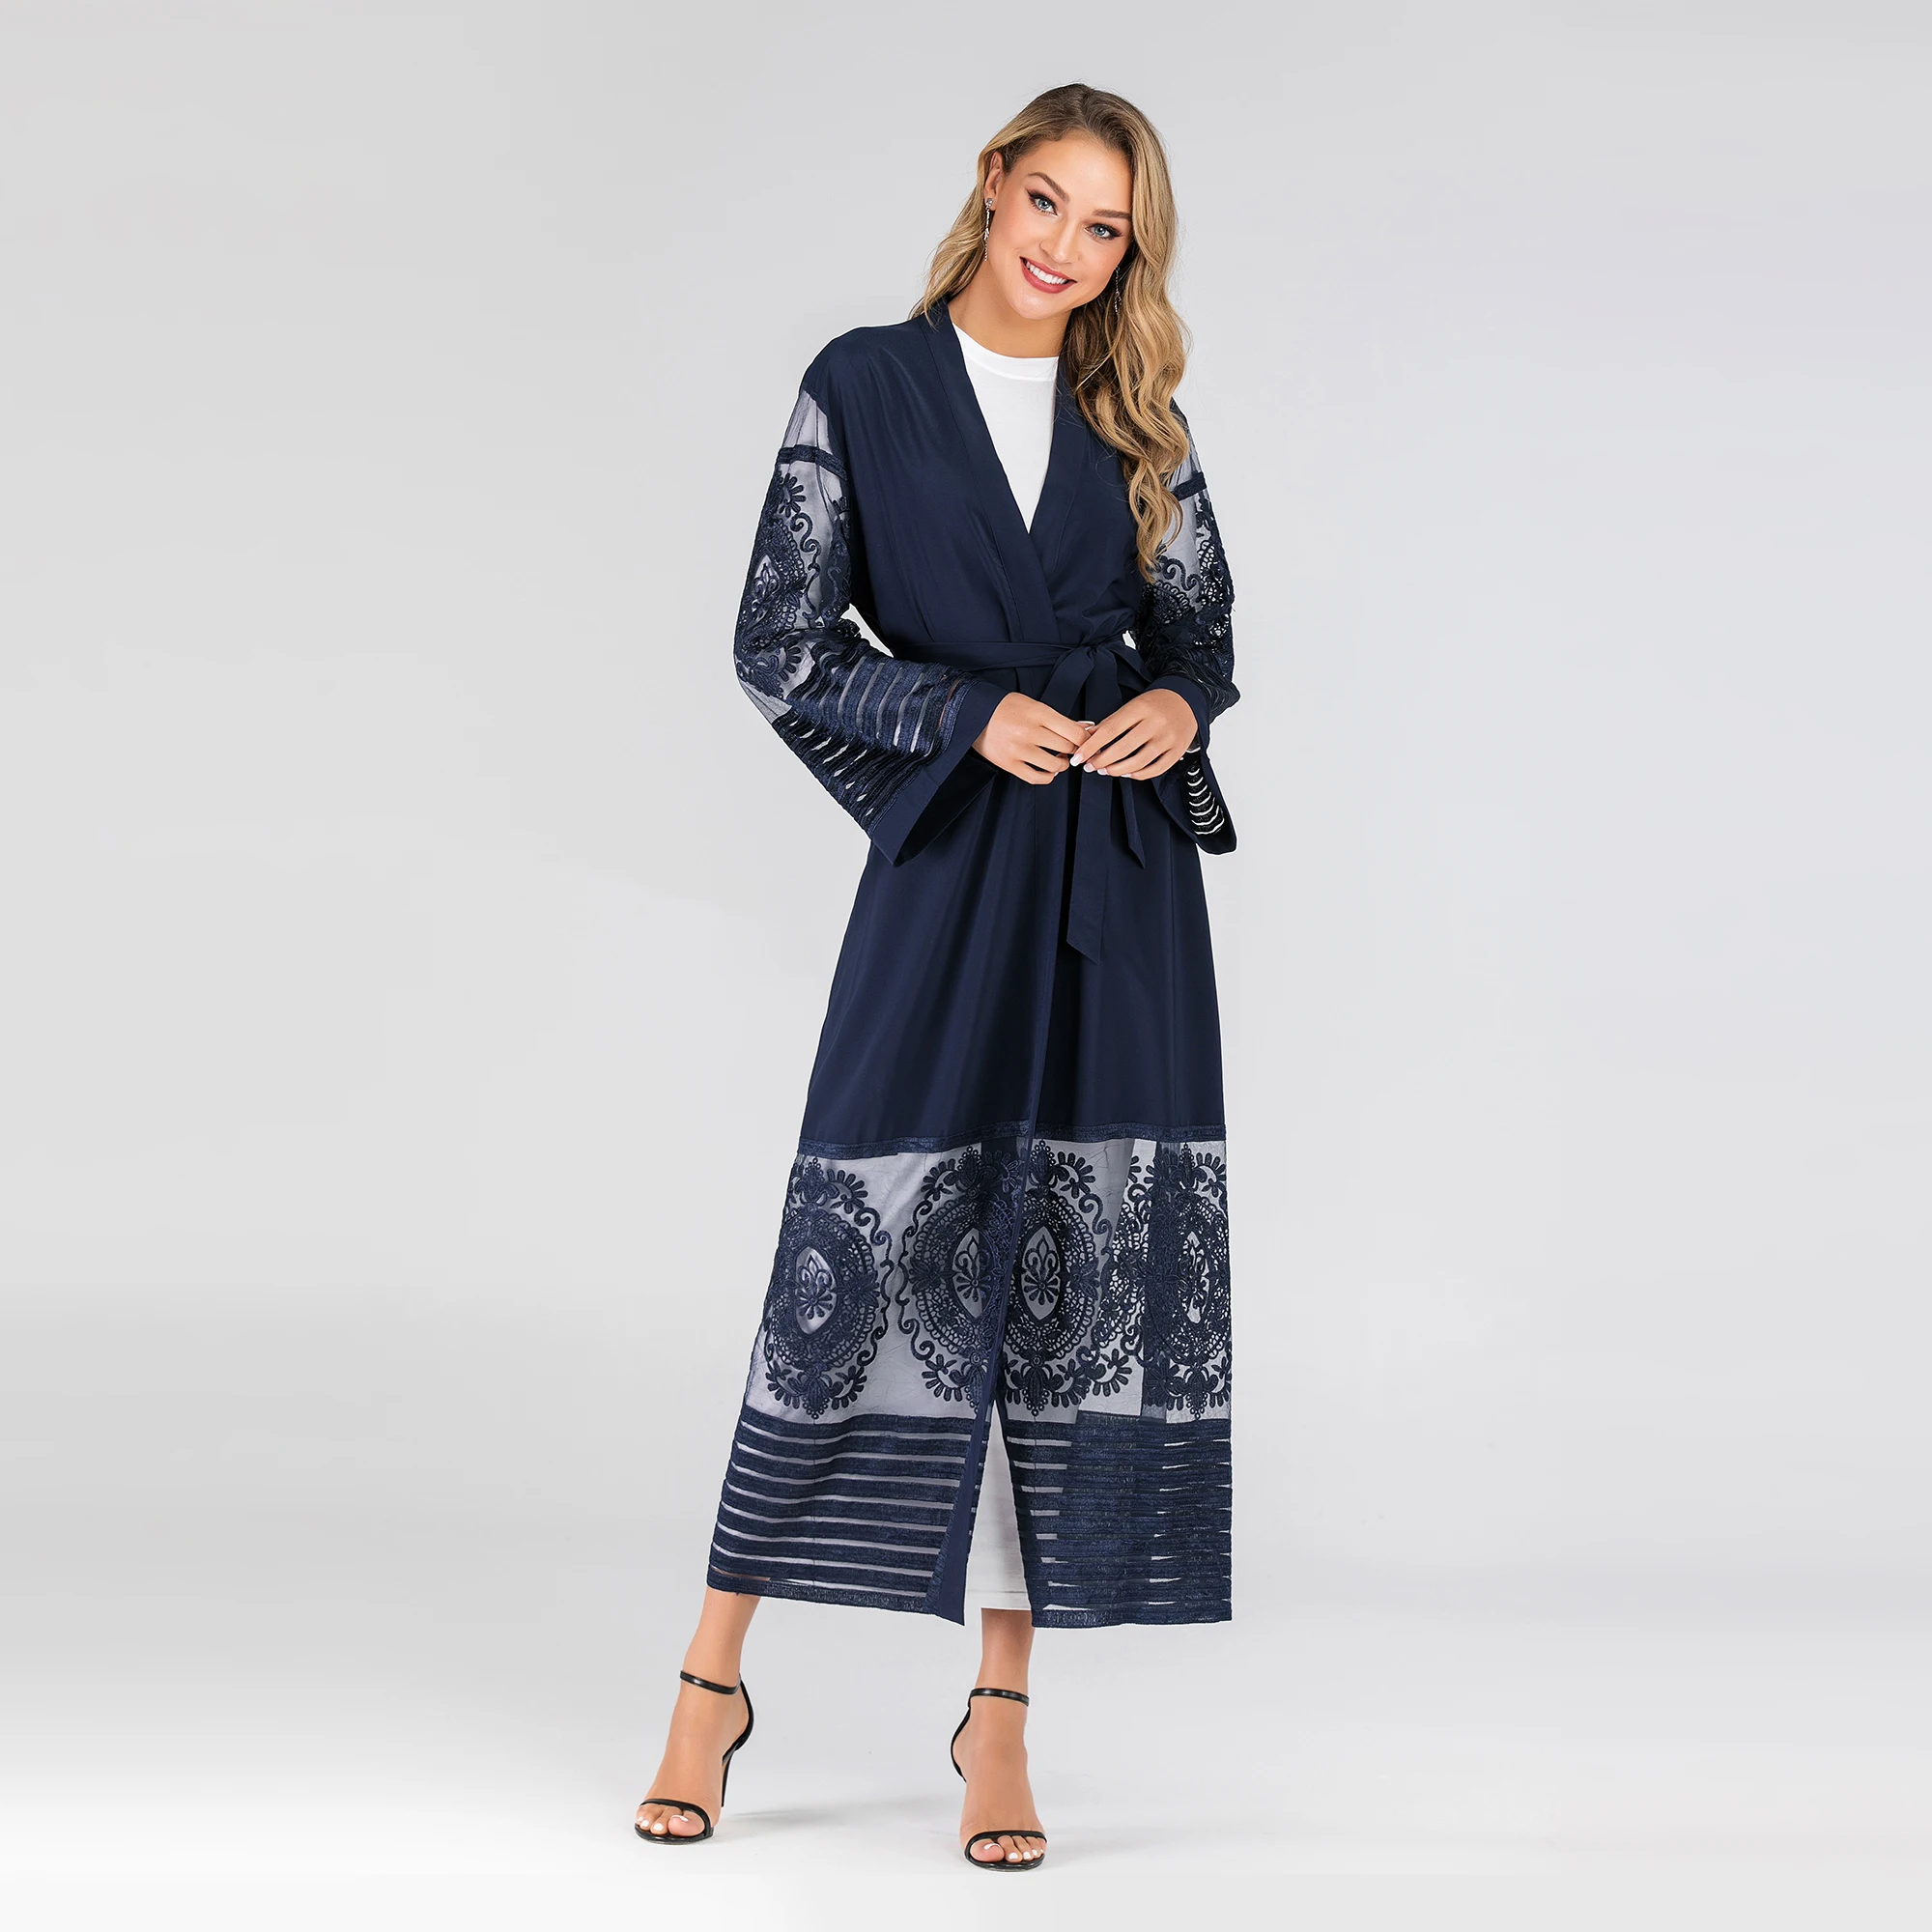 1546 Muslimah Fashion Baju  Kurung 2021 New Model  Abaya  In 